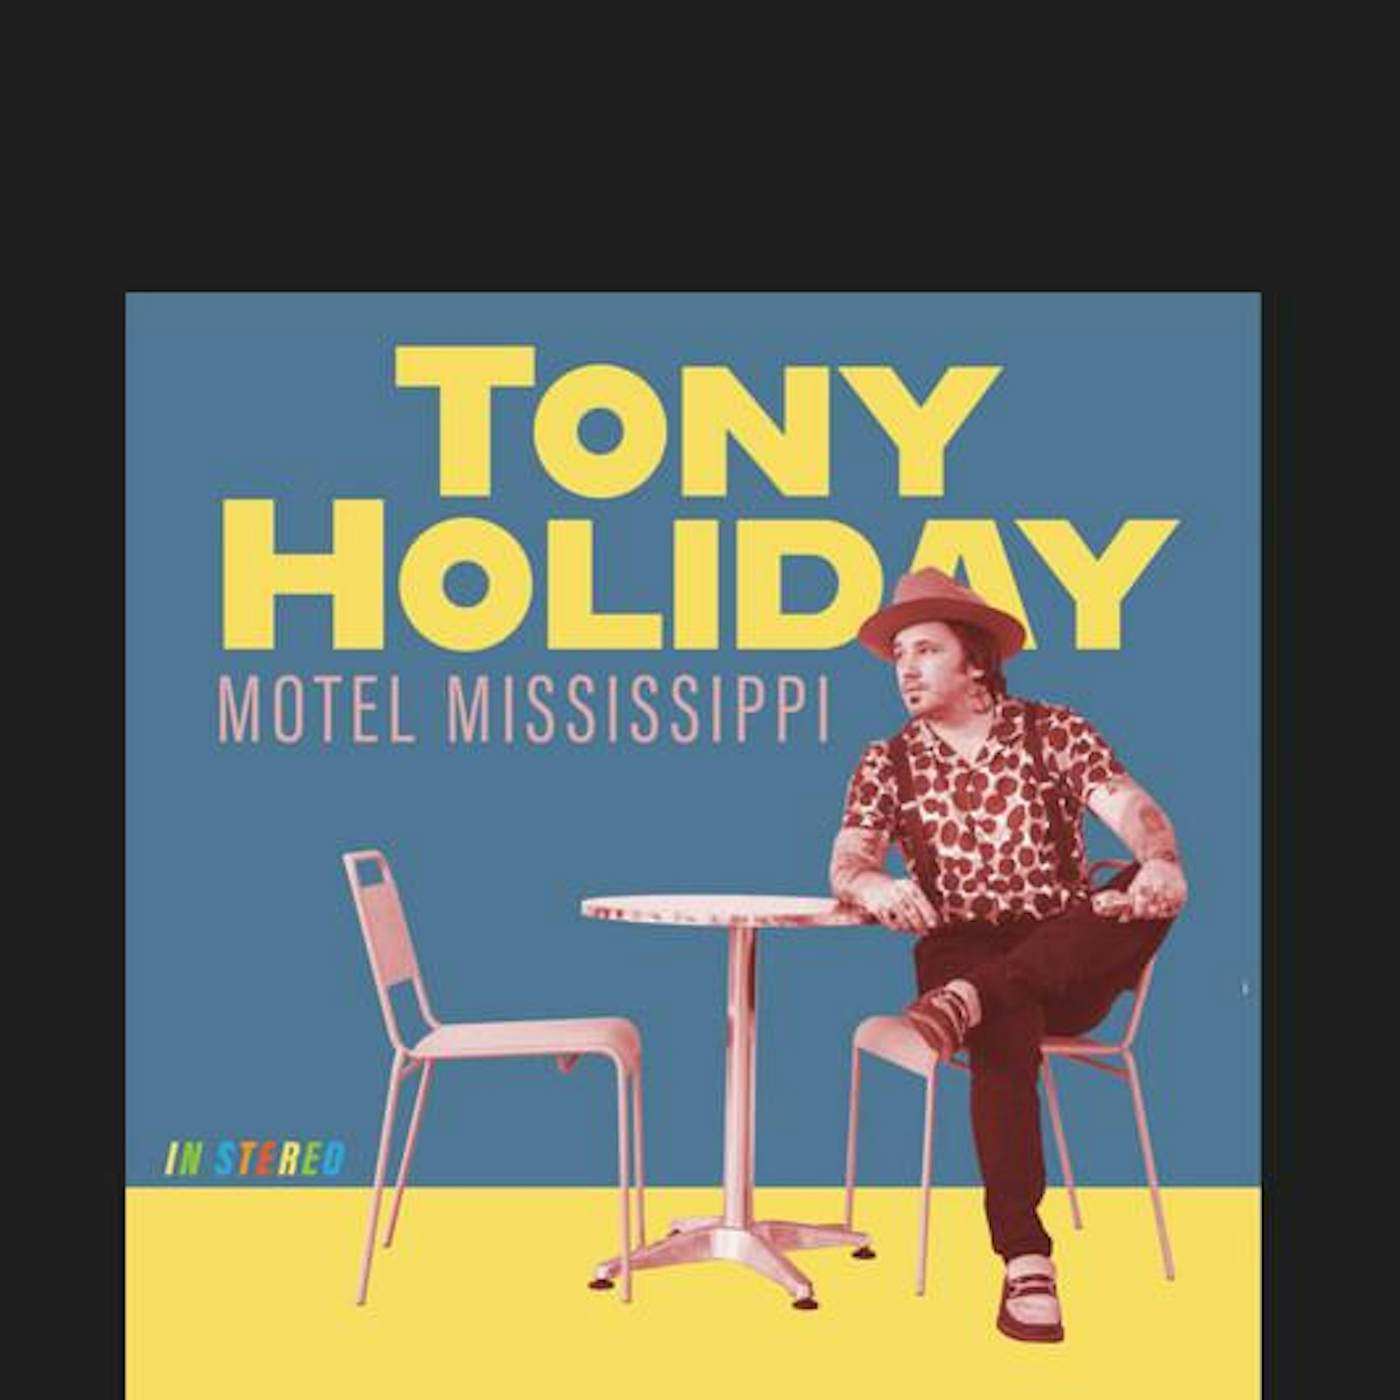 Tony Holiday